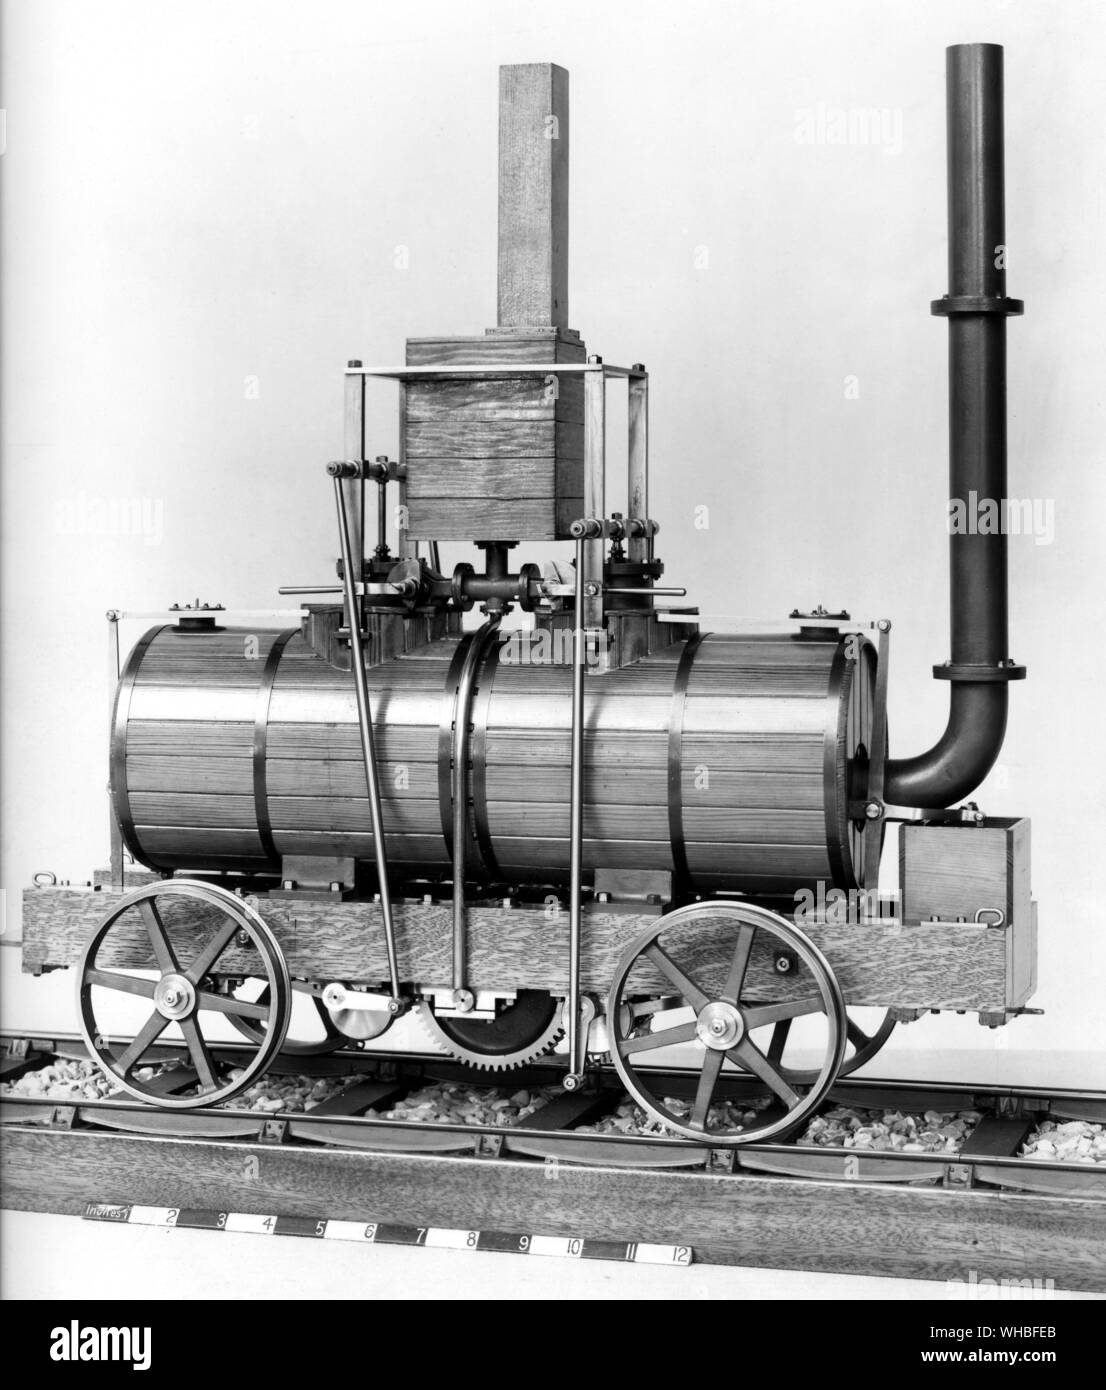 Modell der Blenkinsons Lokomotive 1812 (rechts) - John Blenkinsop (1783-1831) war ein englischer Bergbau Ingenieur und Erfinder im Bereich der Dampflokomotiven, die die ersten praktischen Eisenbahn Lokomotive. entworfen. Stockfoto